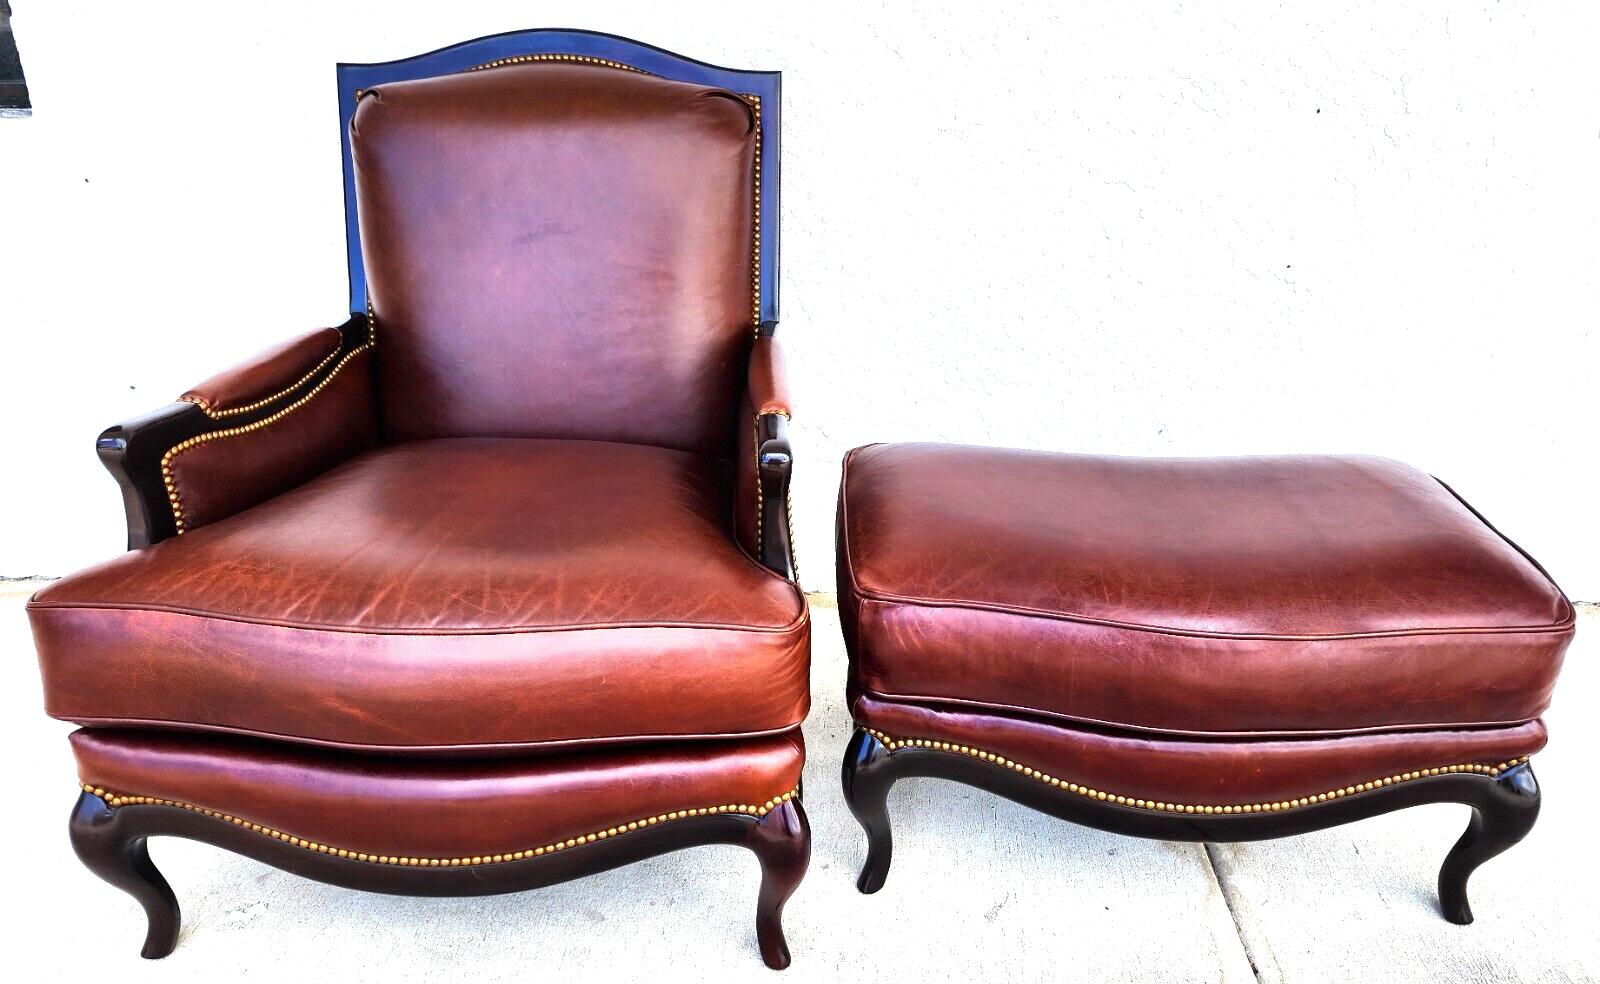 henredon chair and ottoman